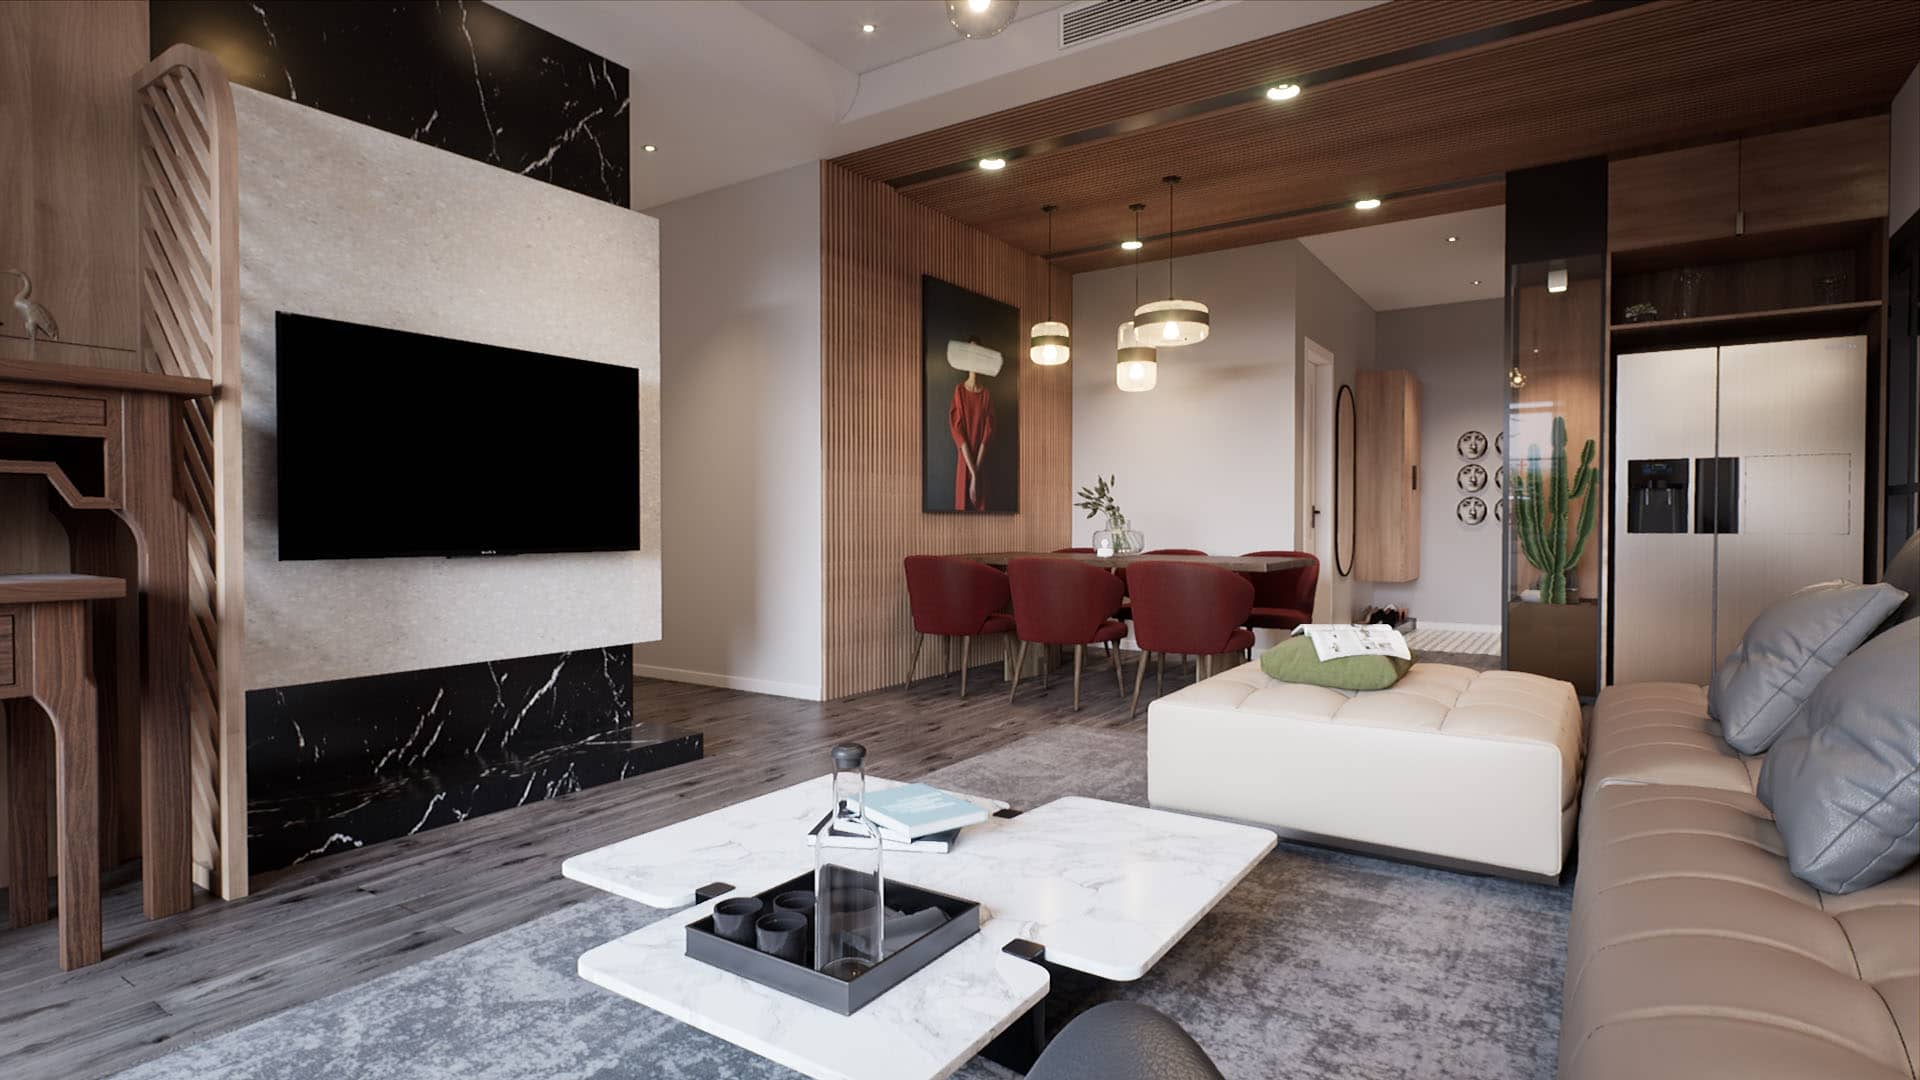 Livingroom Interior in Unreal Engine. Ronen Bekerman 3D